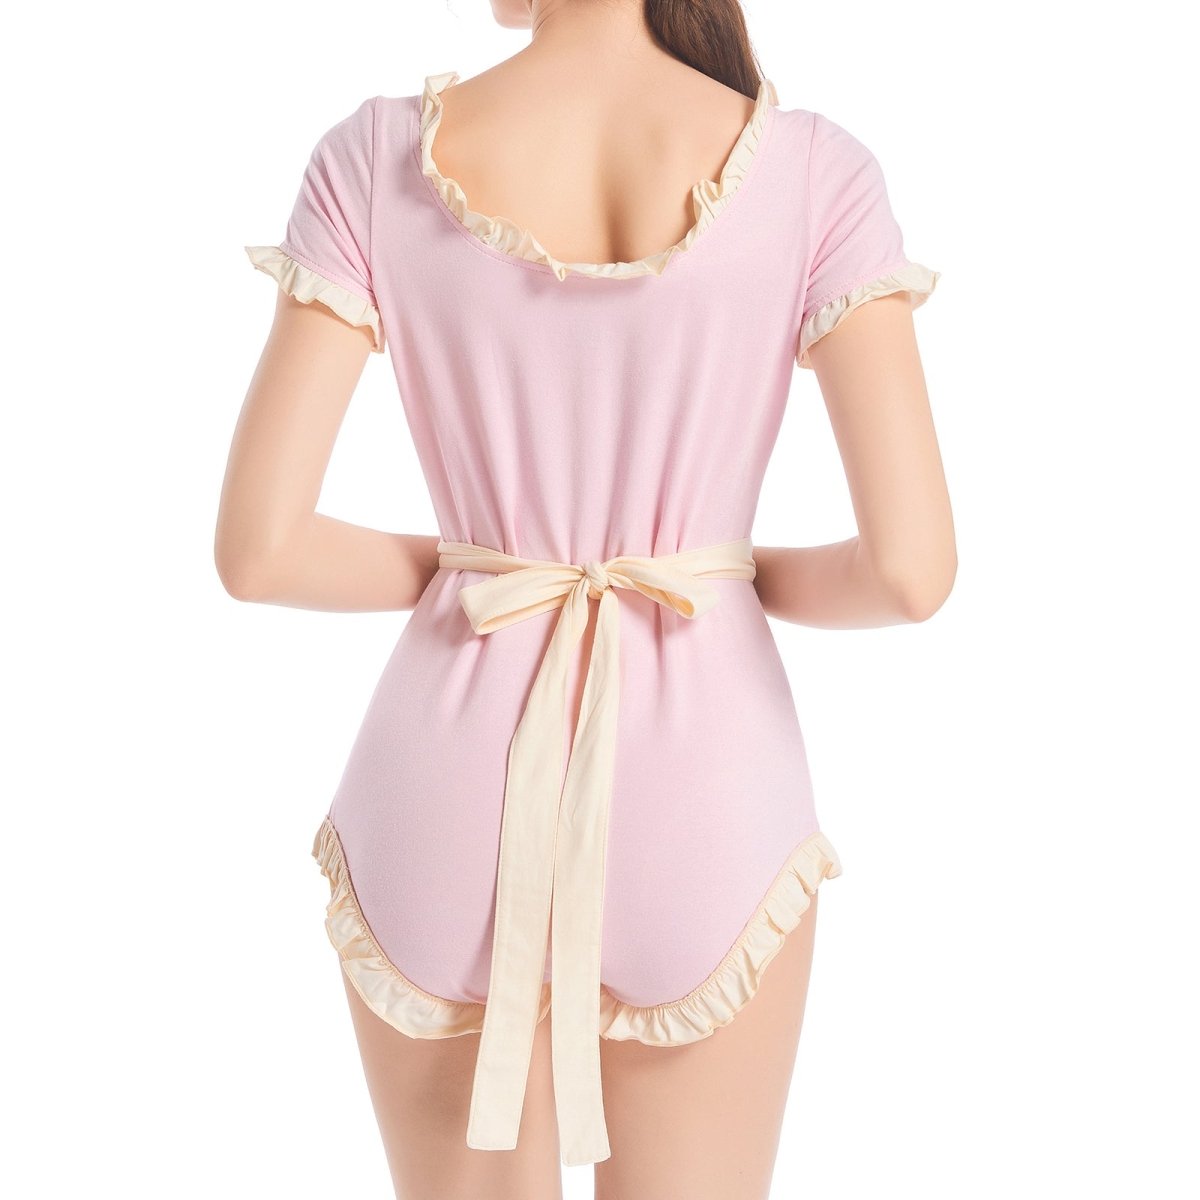 Landofgenie ABDL Bodysuit Cotton Onesie- Pink Maid Outfit - landofgenie